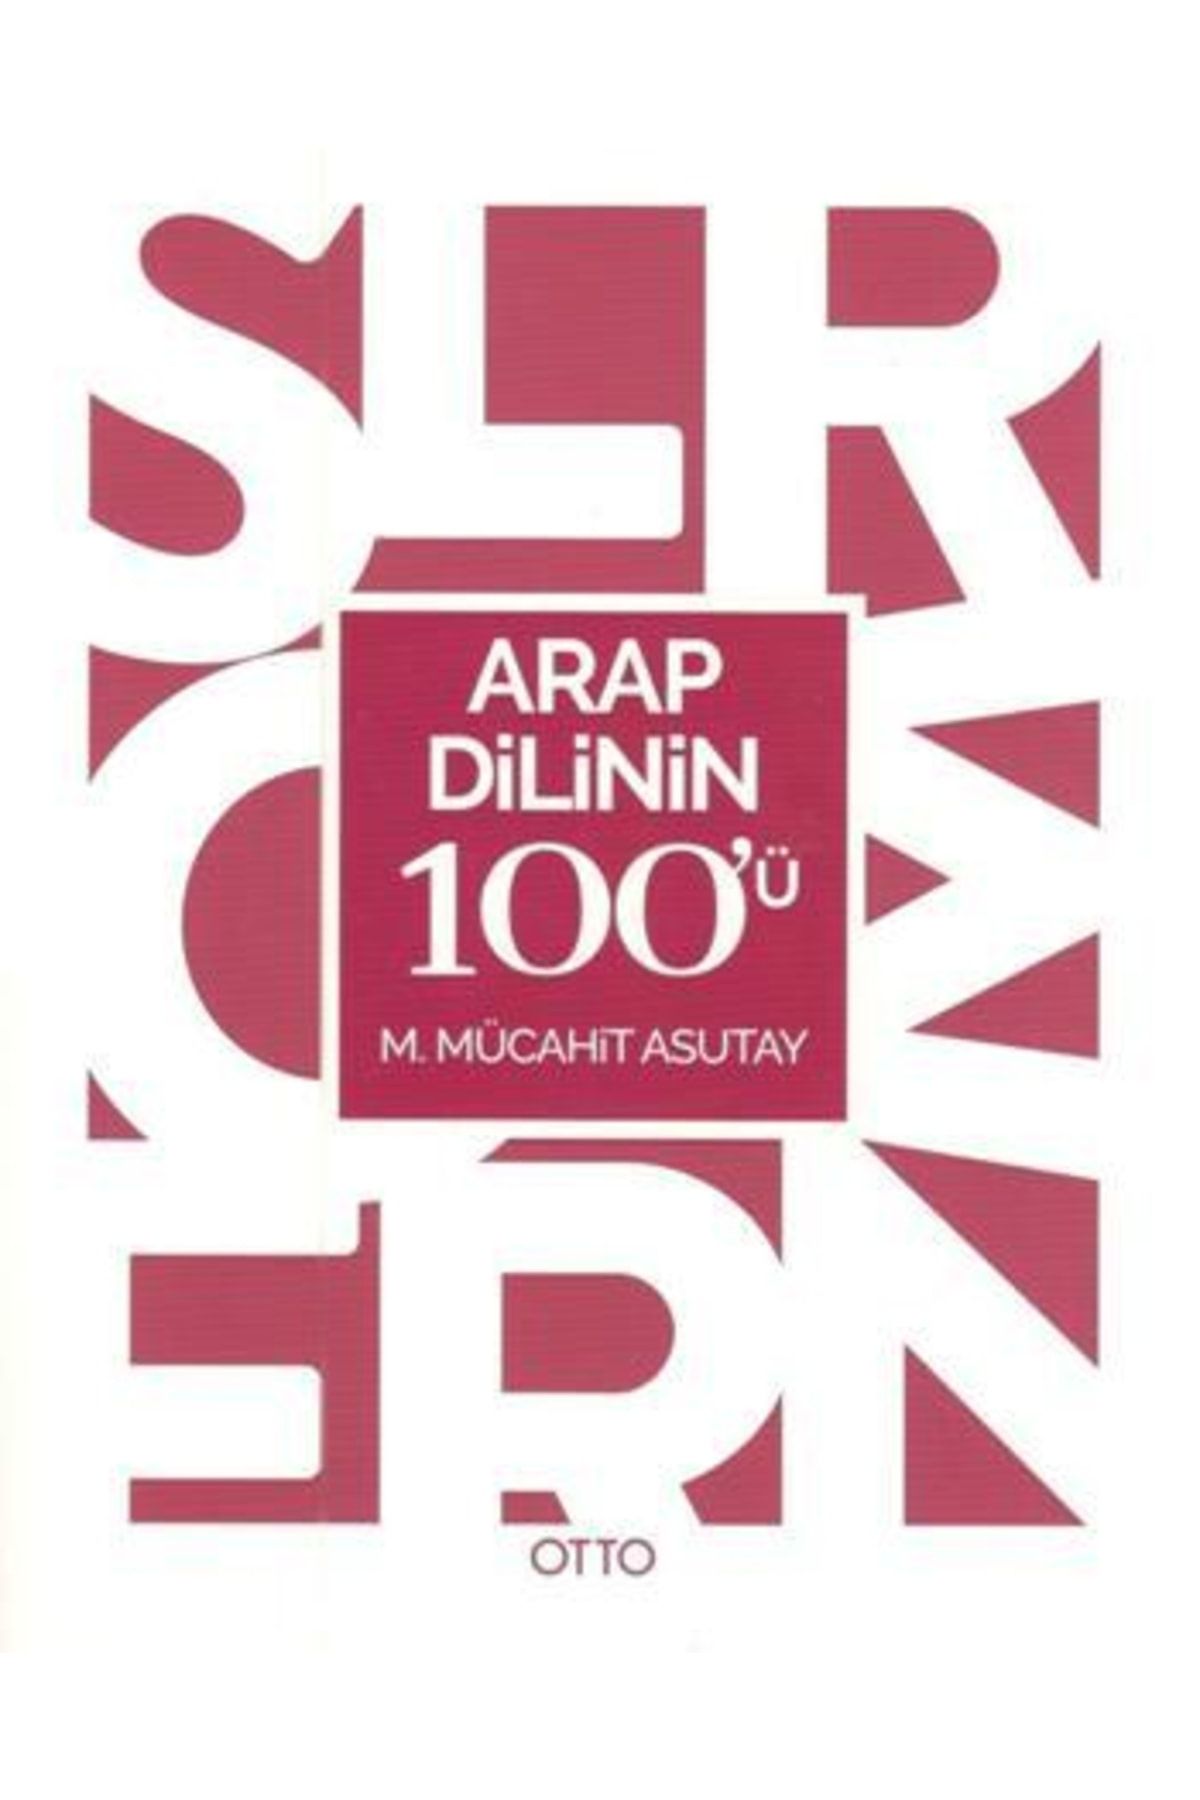 Otto Yayınları Arap Dilinin 100'ü - M. Mücahi?t Asutay